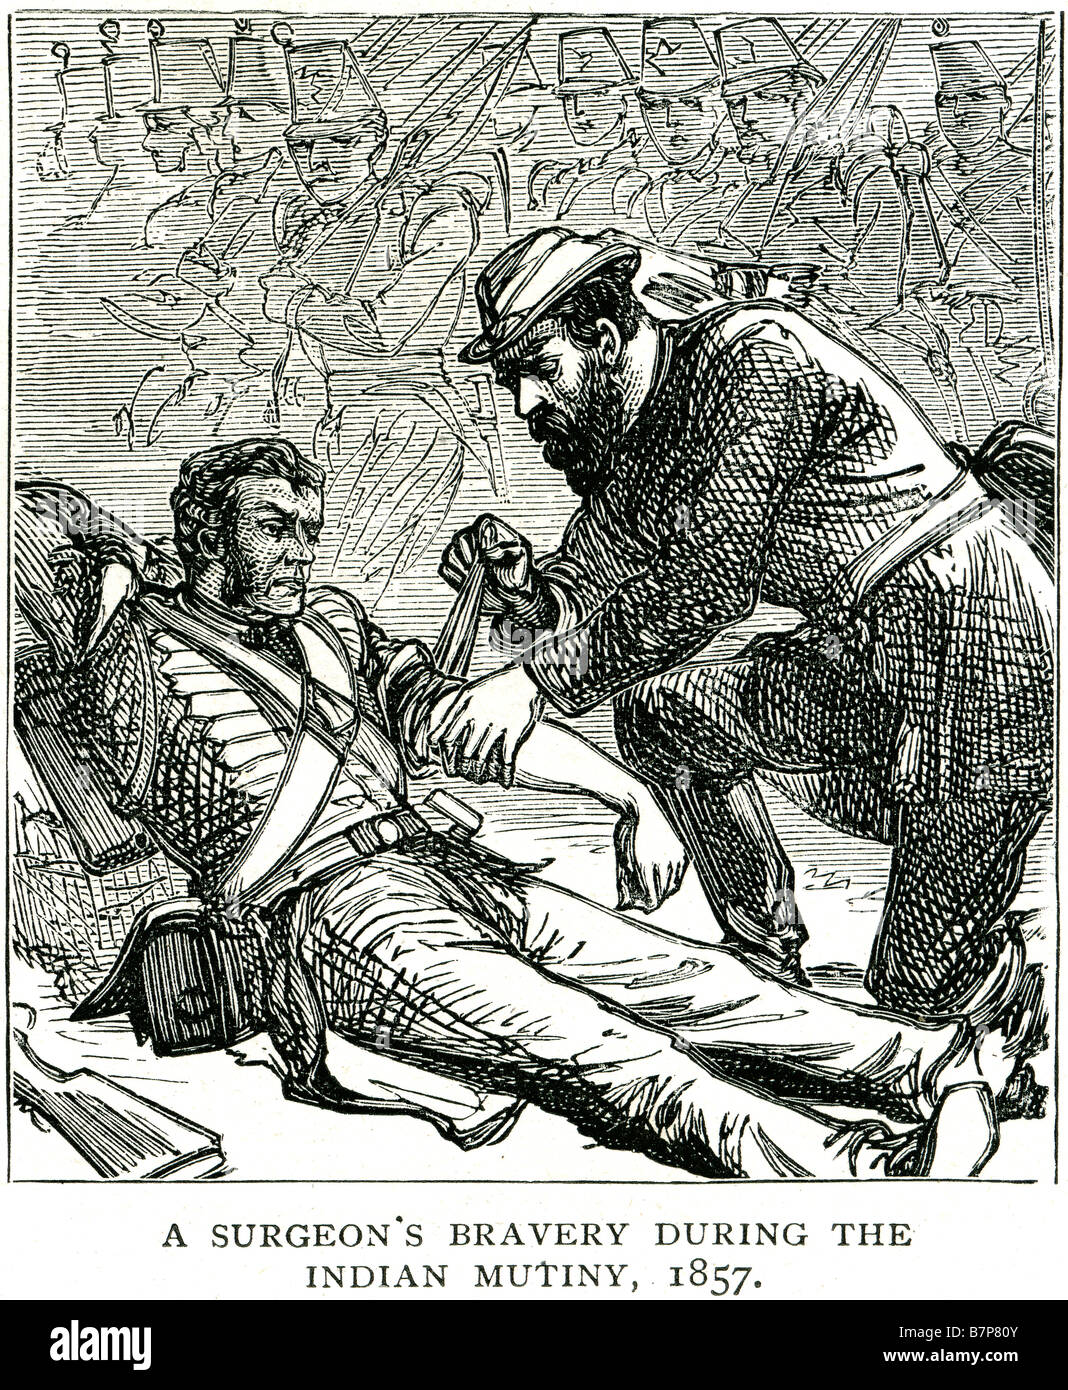 Chirurg Tapferkeit während indische Auflehnung 1857 Arzt Medic verletzt Solider kämpfen Schlacht Krieg Angriff Tod Belagerung Kampf kostenlos die Stockfoto